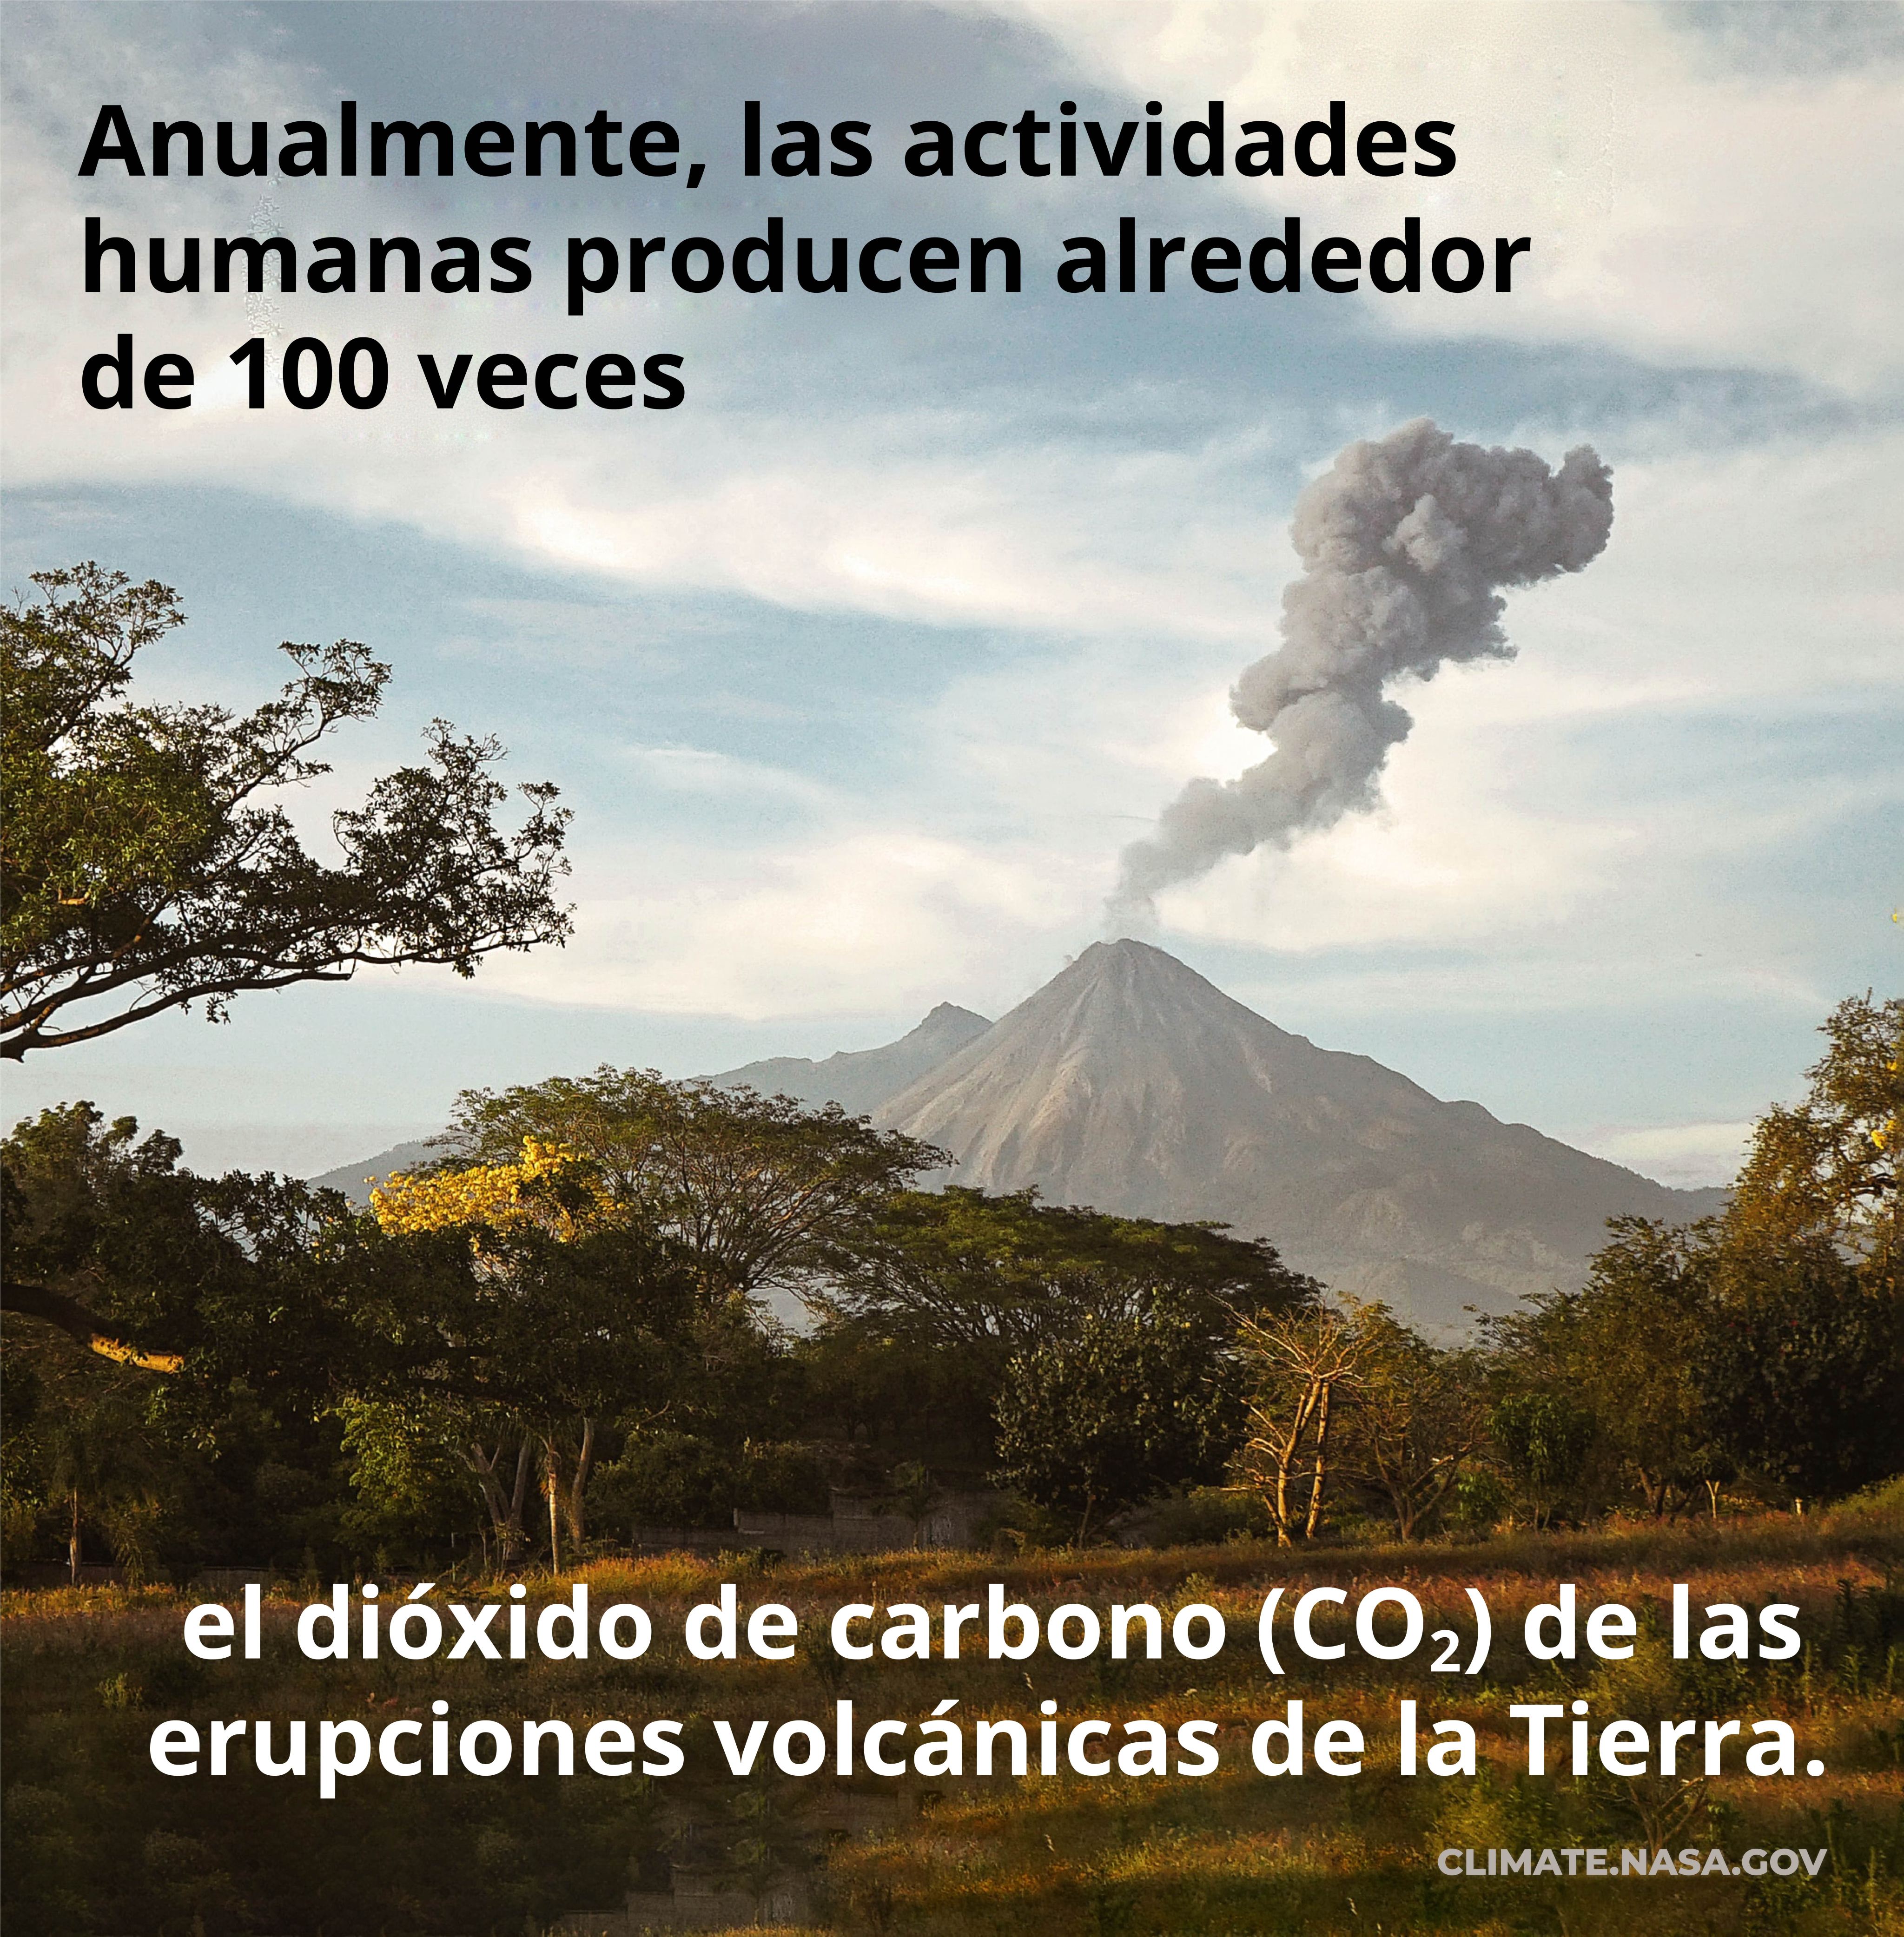 Anualmente, las actividades humanas producen alrededeor de 100 veces el dioxido de carbono (CO2) de las erupciones volcanicas de la Tierra.